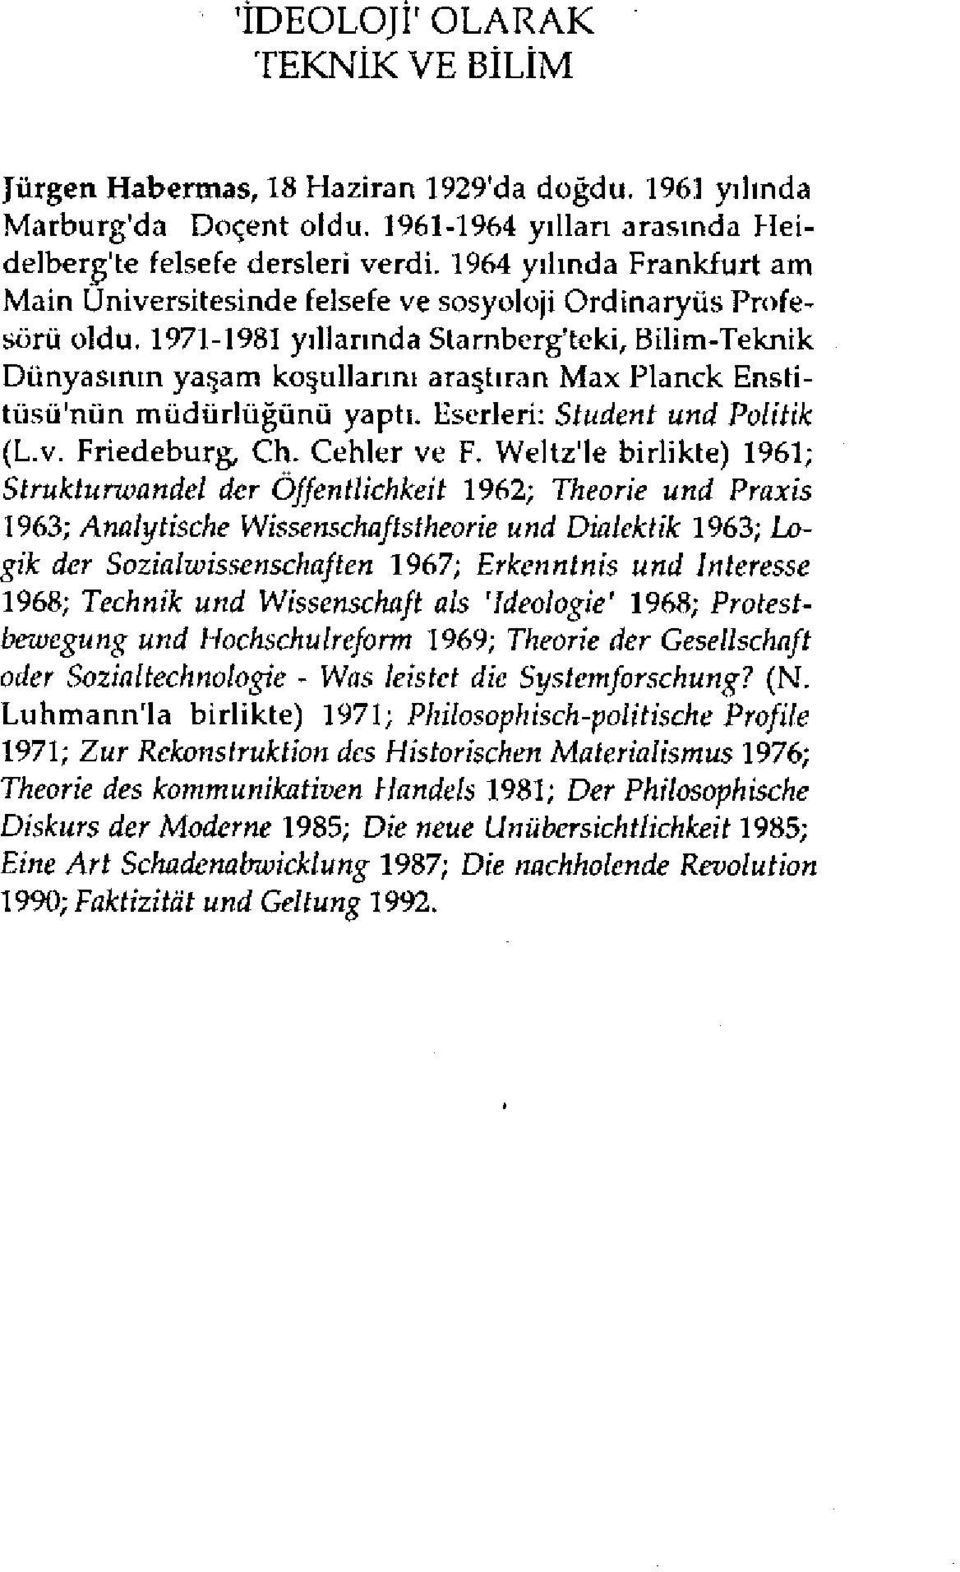 1971-1981 yıllarında Starnberg'teki, Bilim-Teknik Dünyasının yaşam koşullarını araştıran Max Planck Enstitüsü'nün müdürlüğünü yaptı. Eserleri: Student und Politik (L.v. Friedeburg, Ch. Cehler ve F.